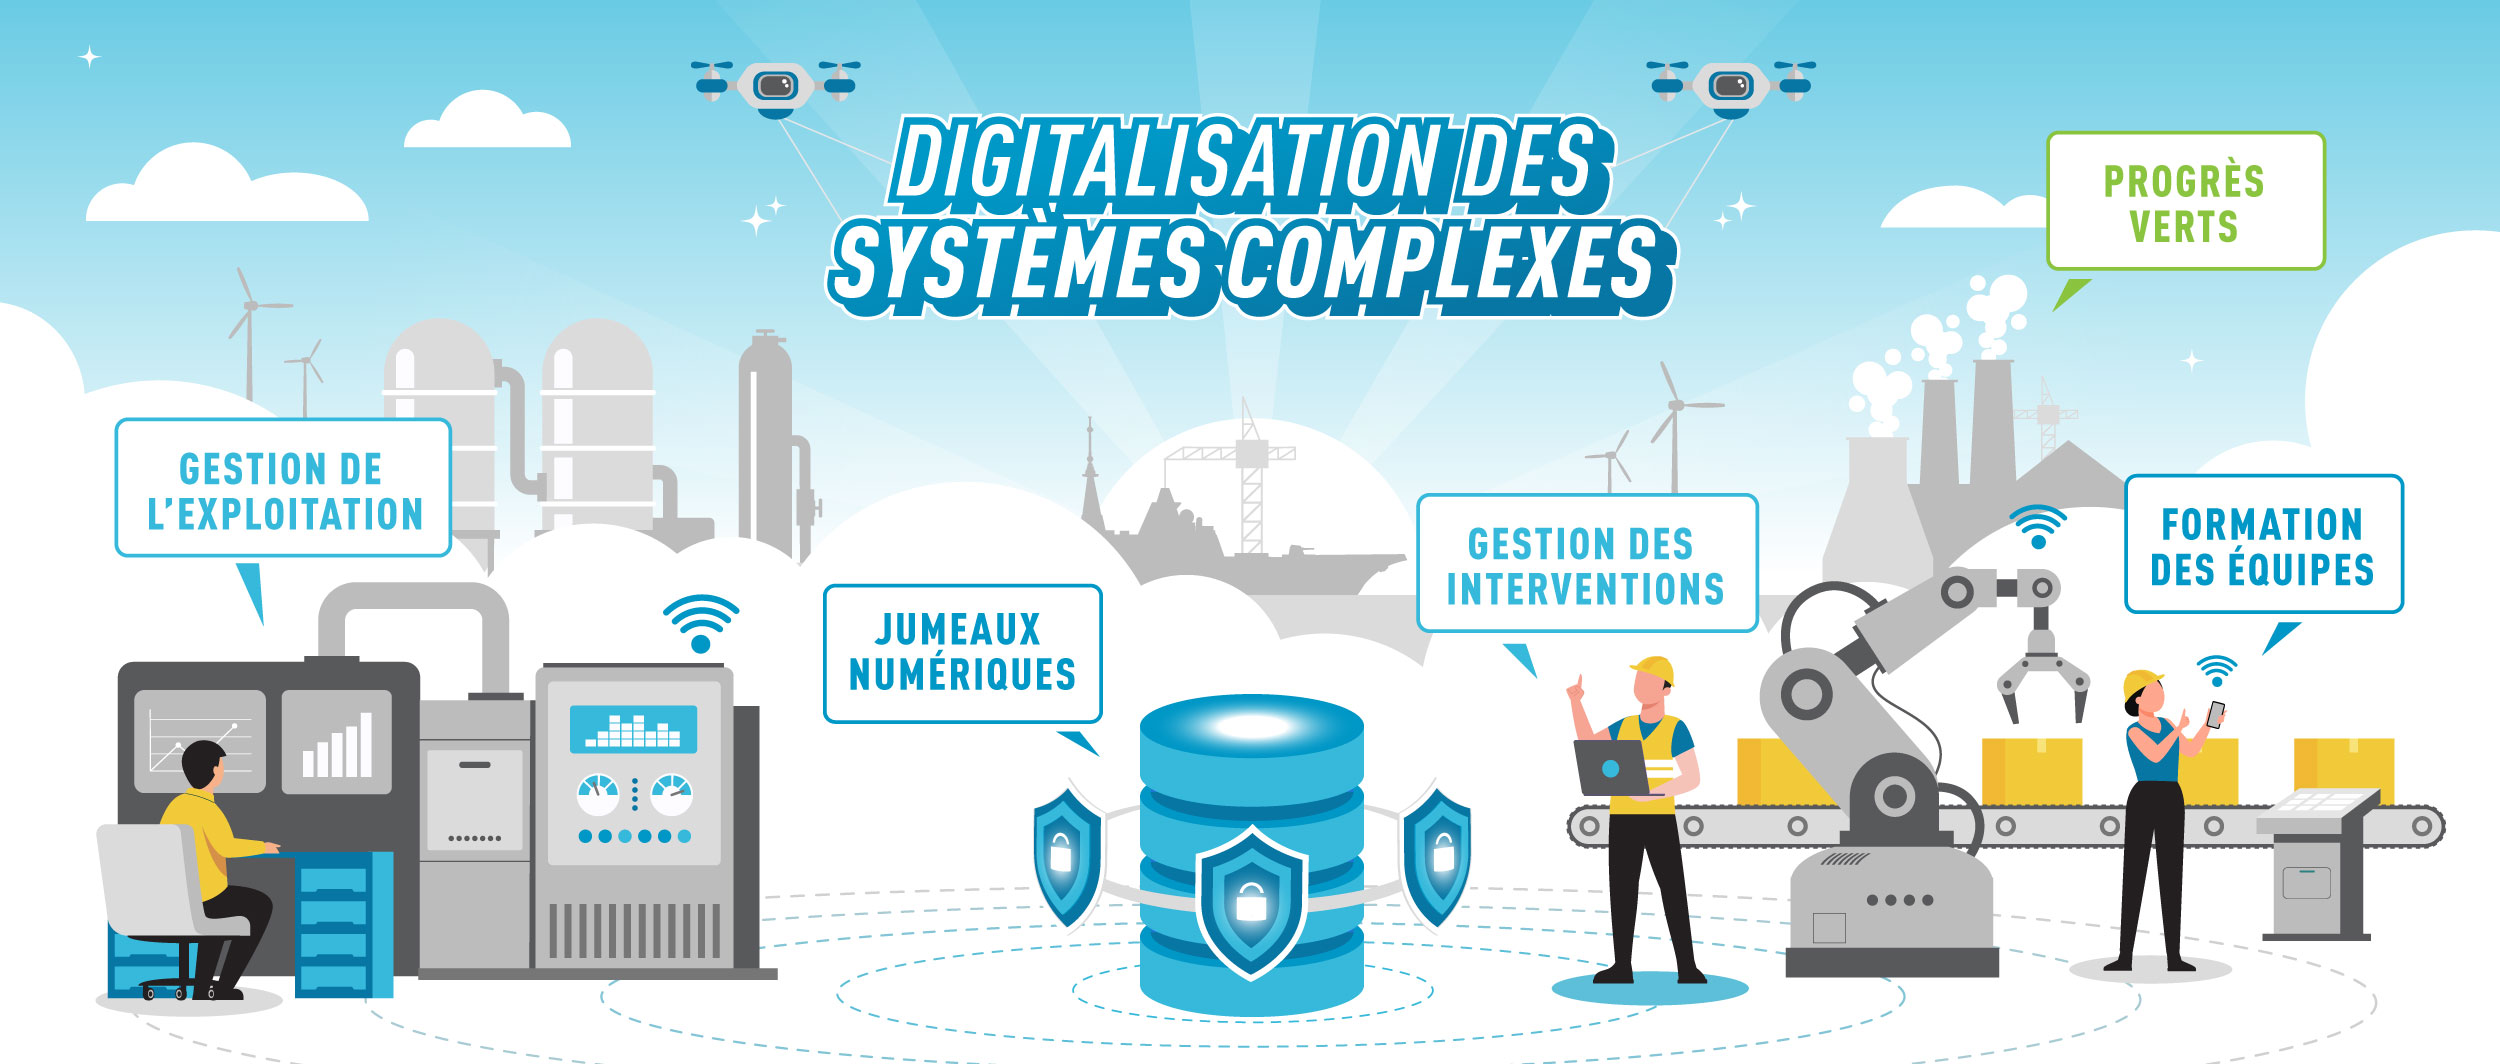 Ennovia-Illustration : digitalisation et compétitivité des systèmes complexes